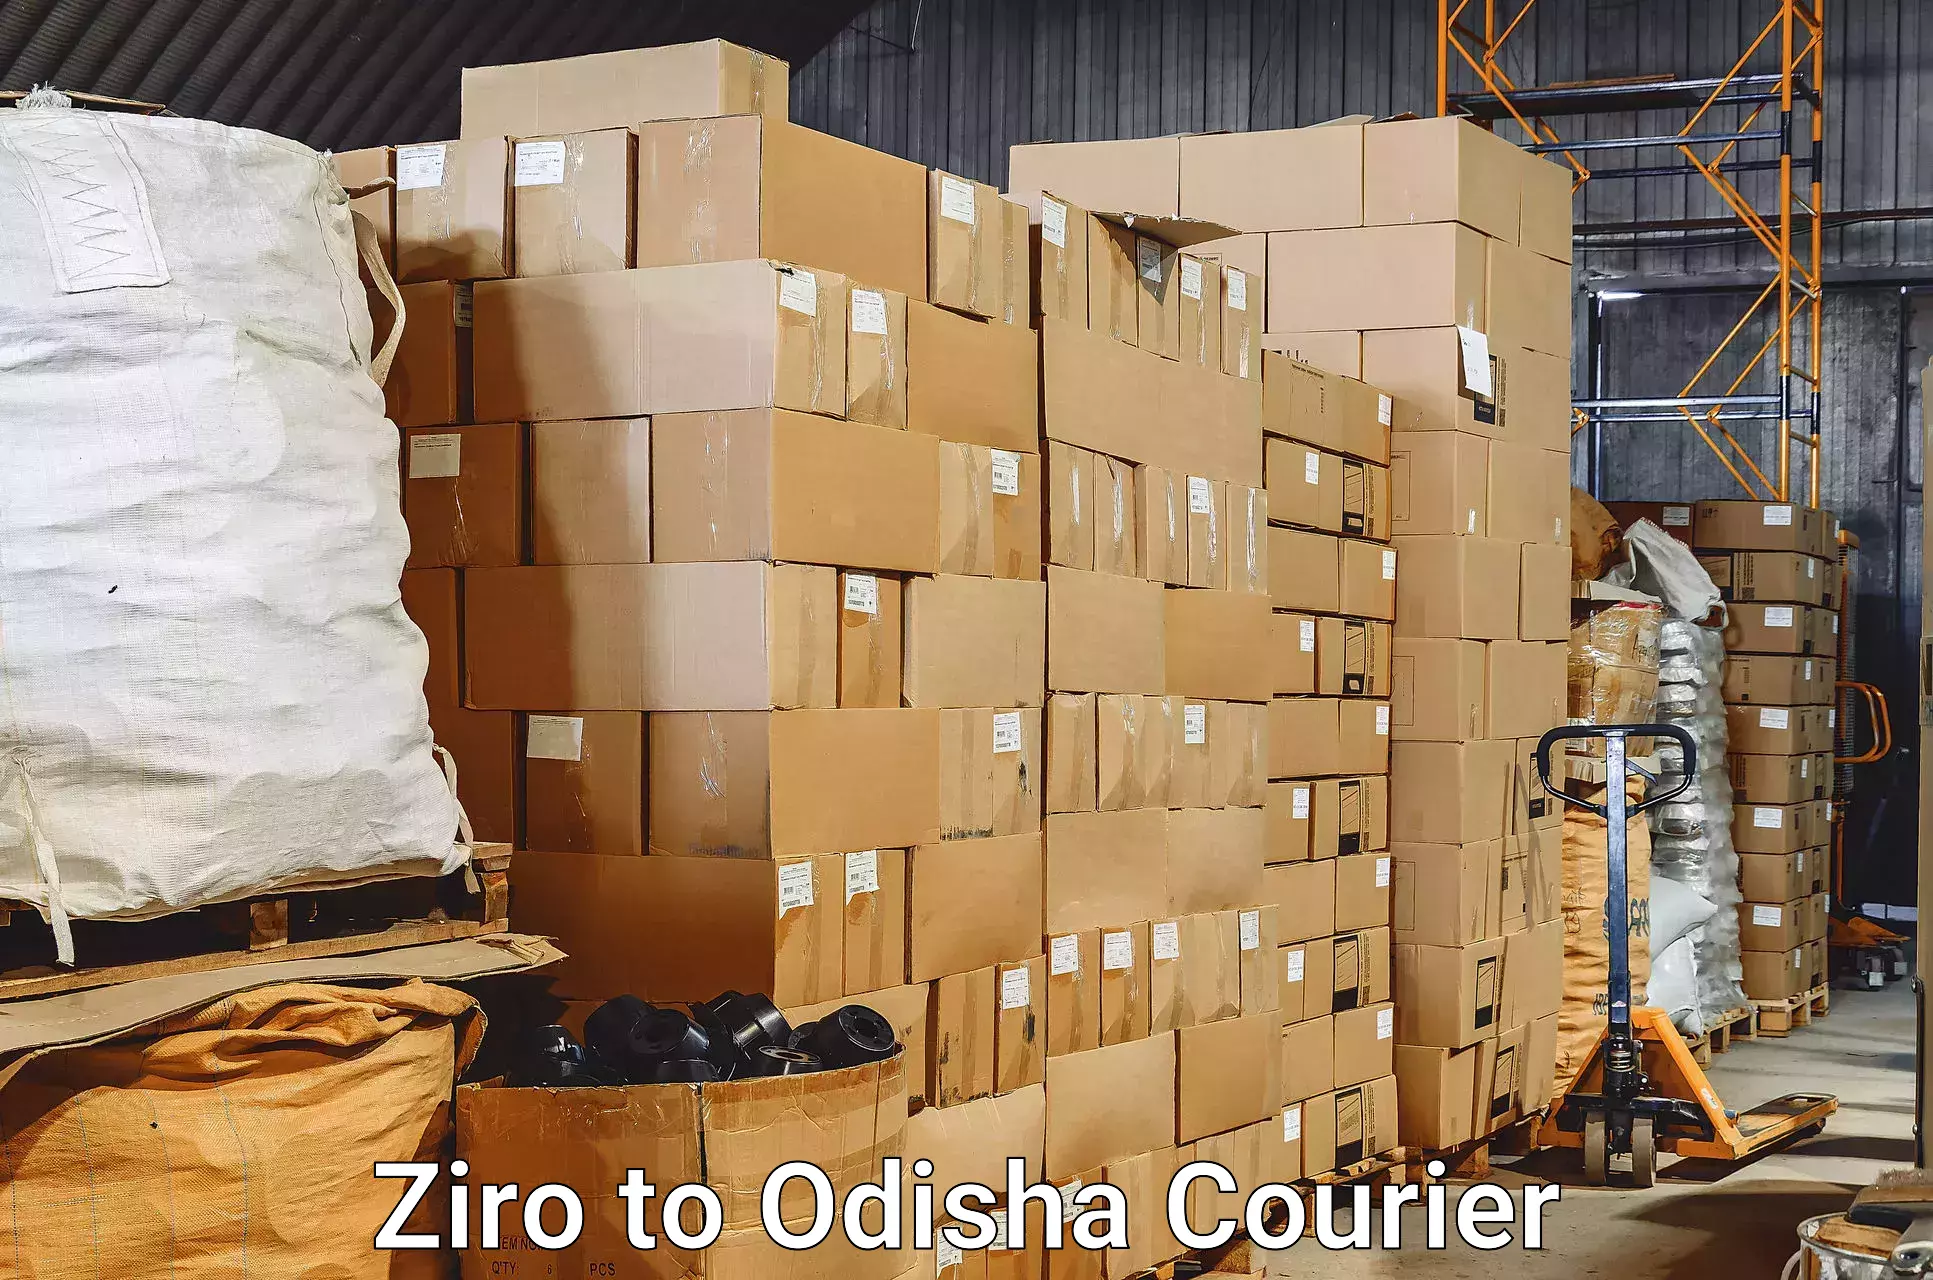 Luggage shipment specialists Ziro to Binka